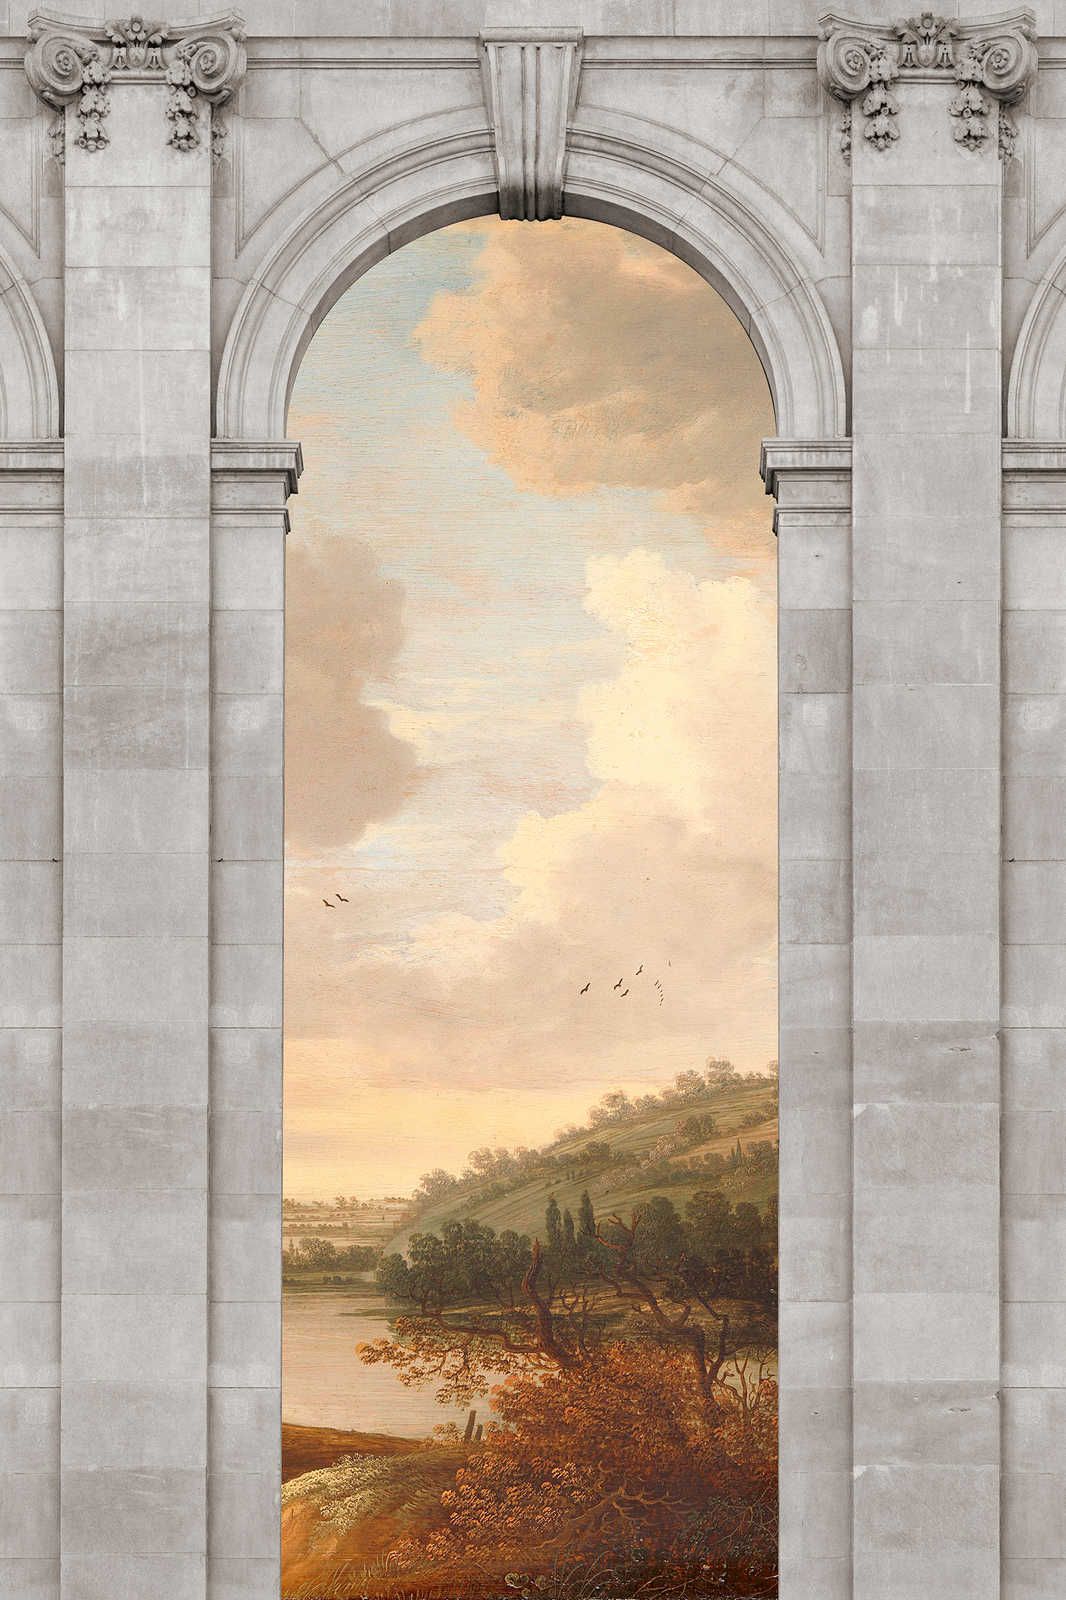             Castello 1 - Canvas painting Landscape & Arch Architecture - 0.90 m x 0.60 m
        